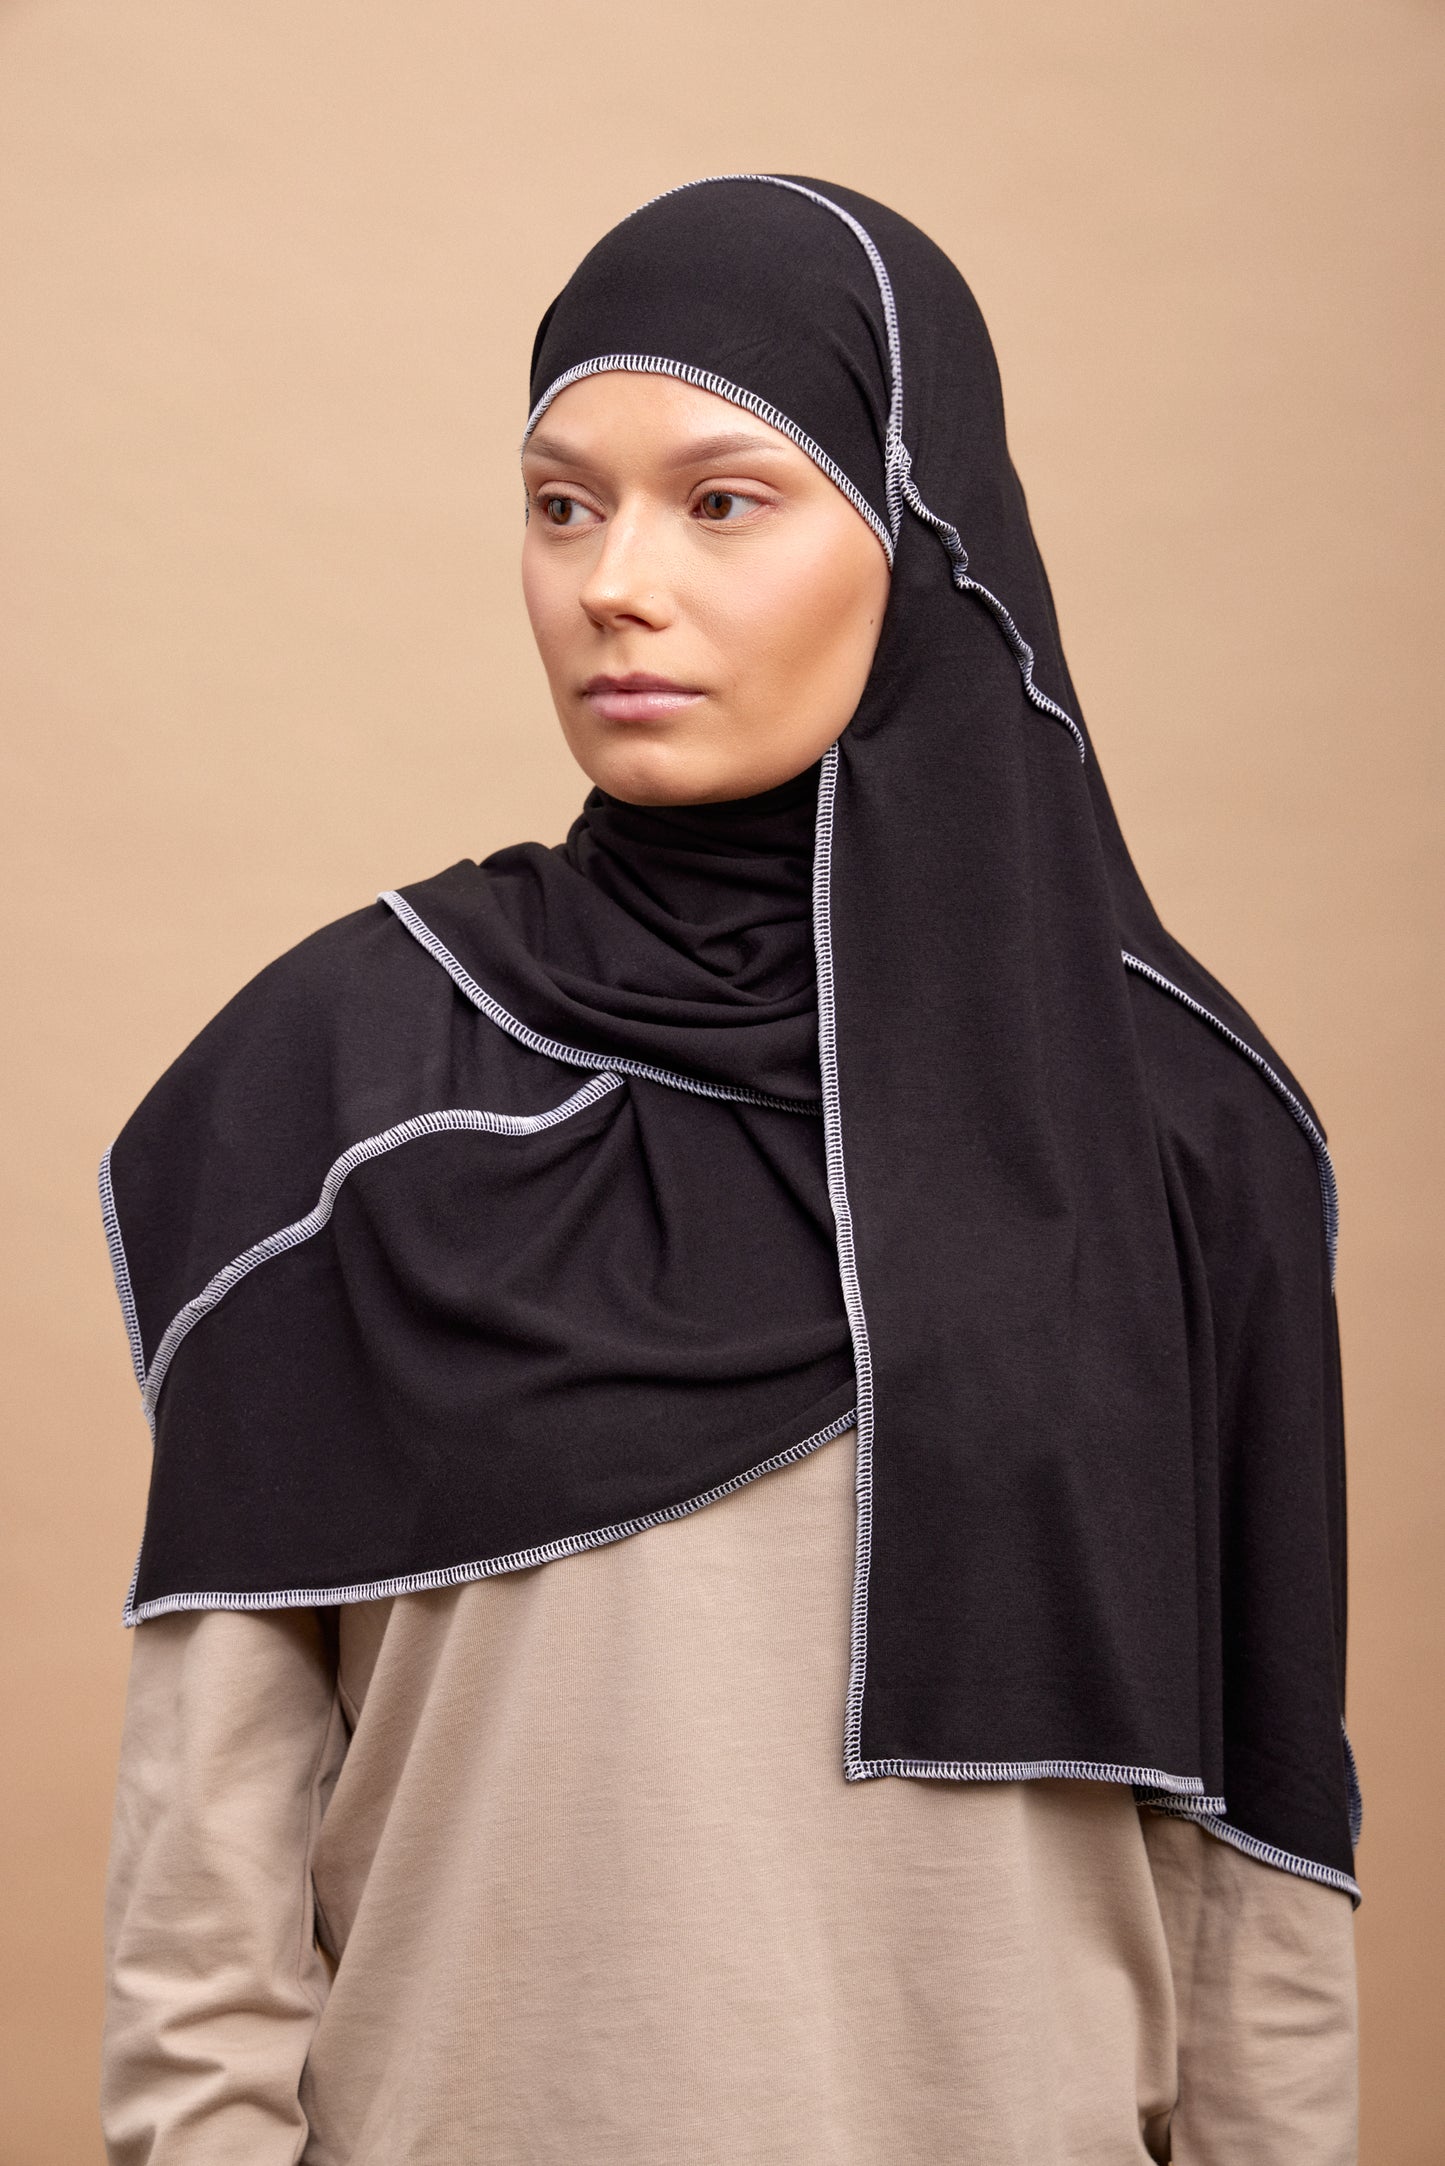 Streetwear hijab